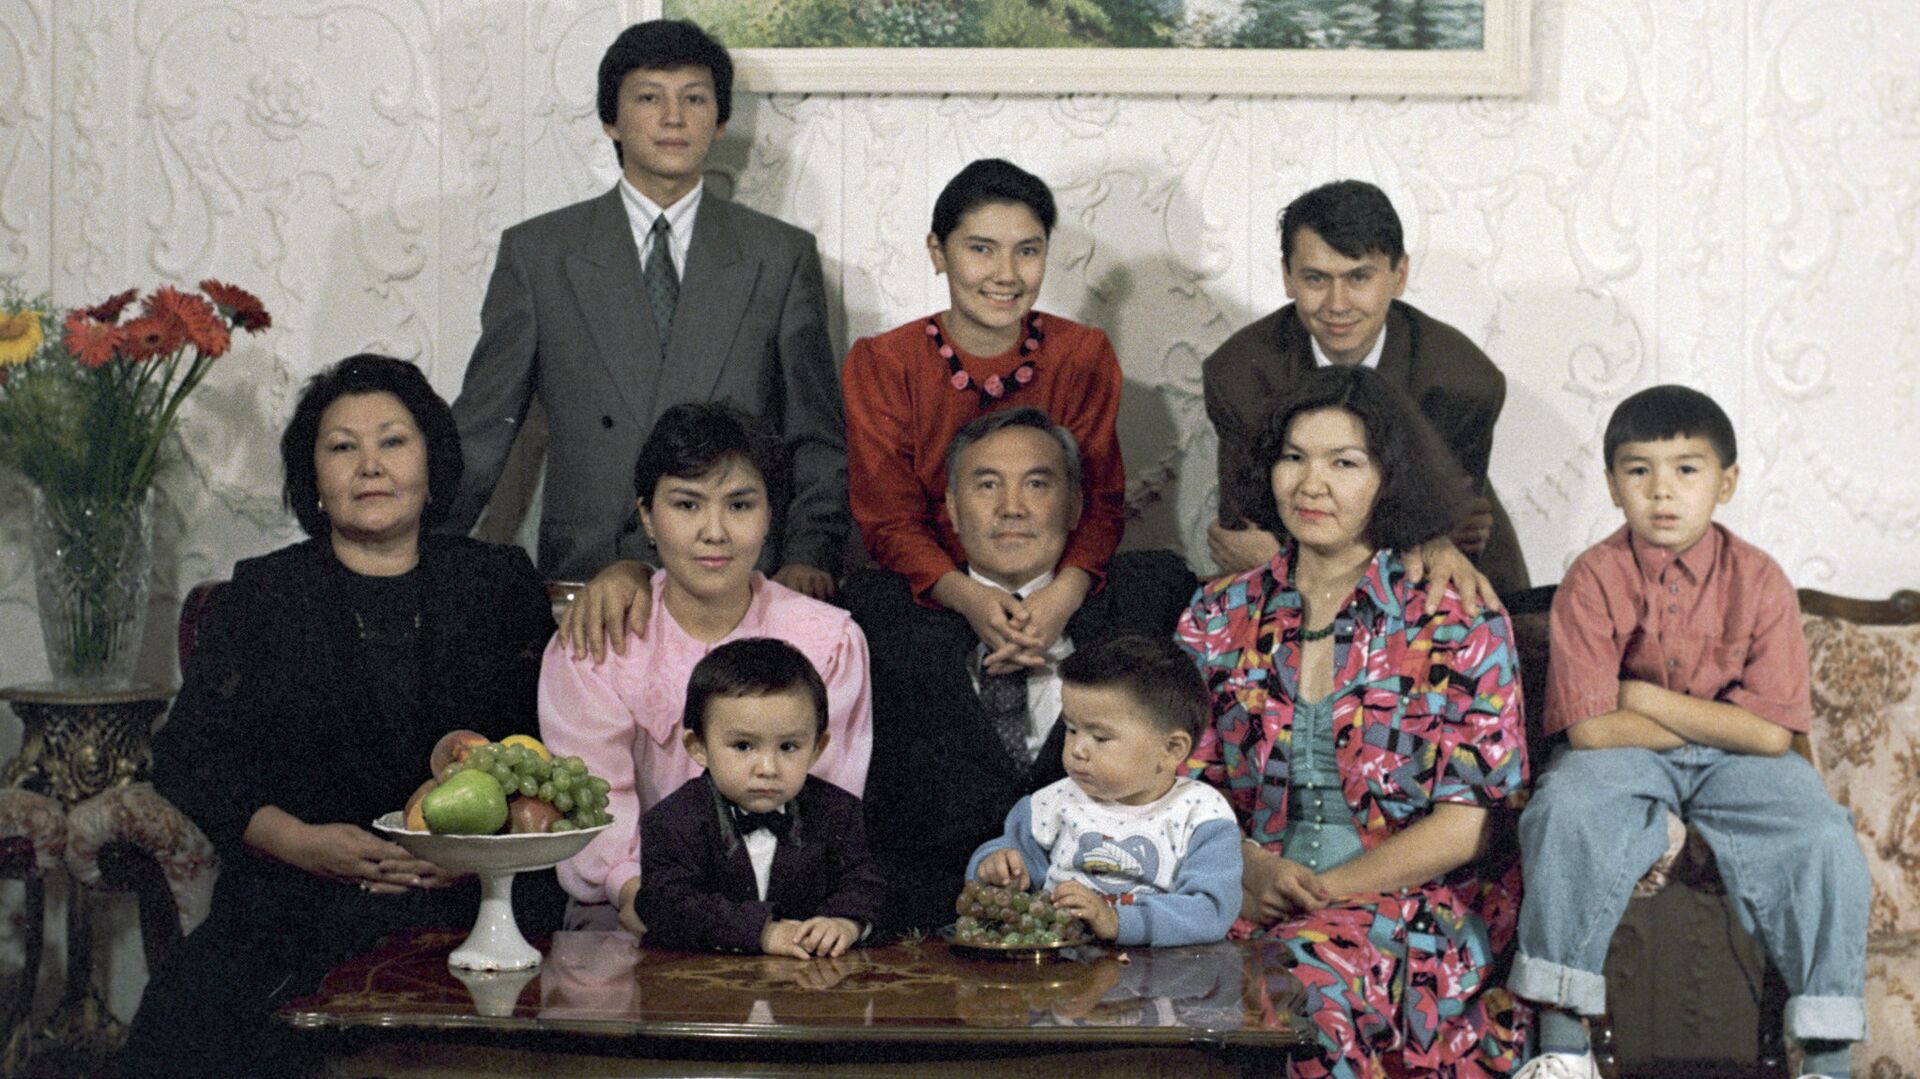 Первый президент РК Нурсултан Назарбаев с семьей. Архивное фото - Sputnik Кыргызстан, 1920, 10.05.2022